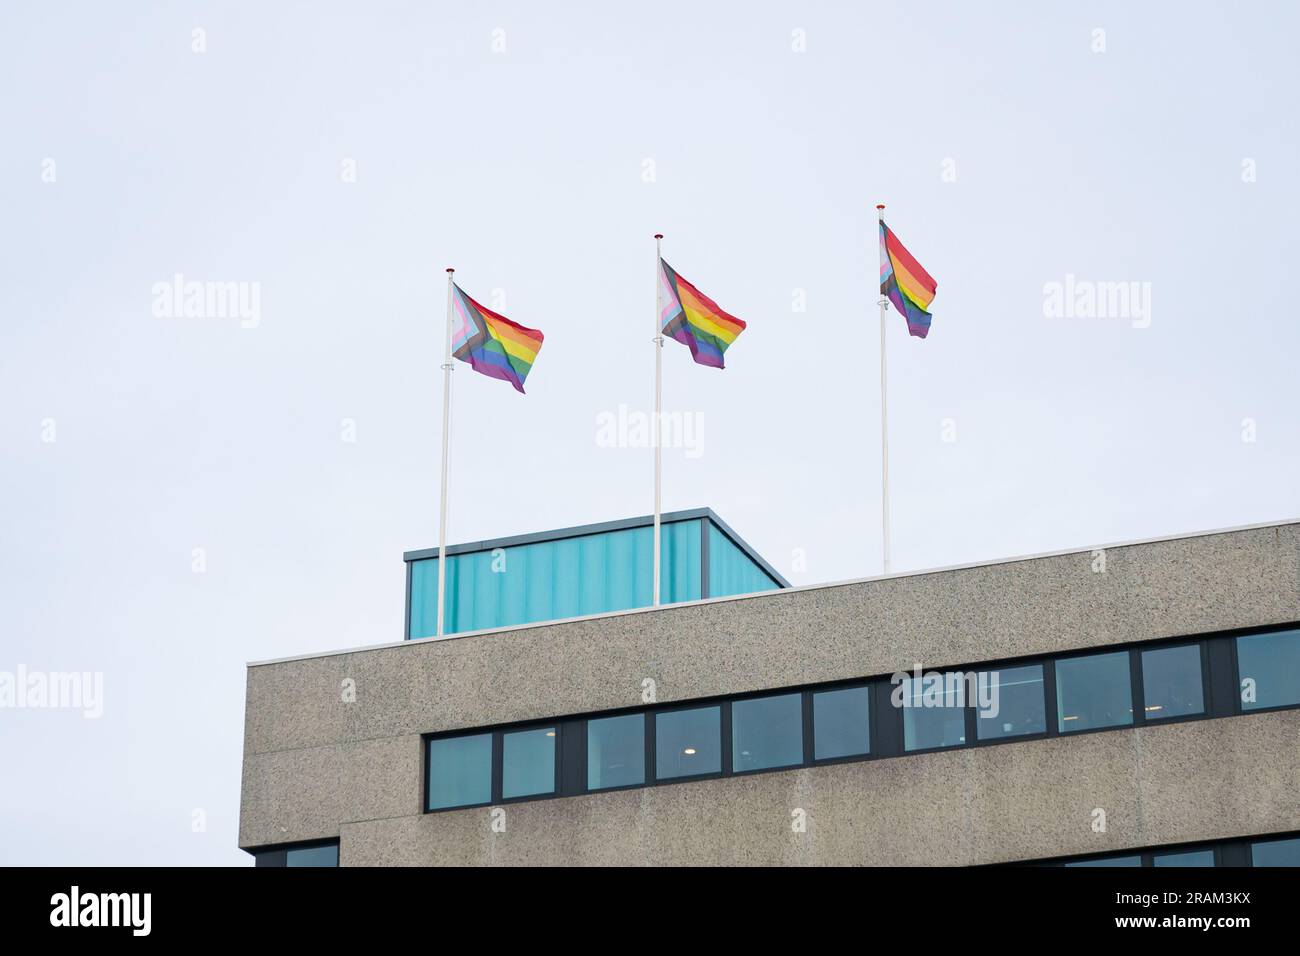 Brandissant des drapeaux de fierté transgenre sur le sommet d'un bâtiment à Amsterdam, aux pays-Bas Banque D'Images